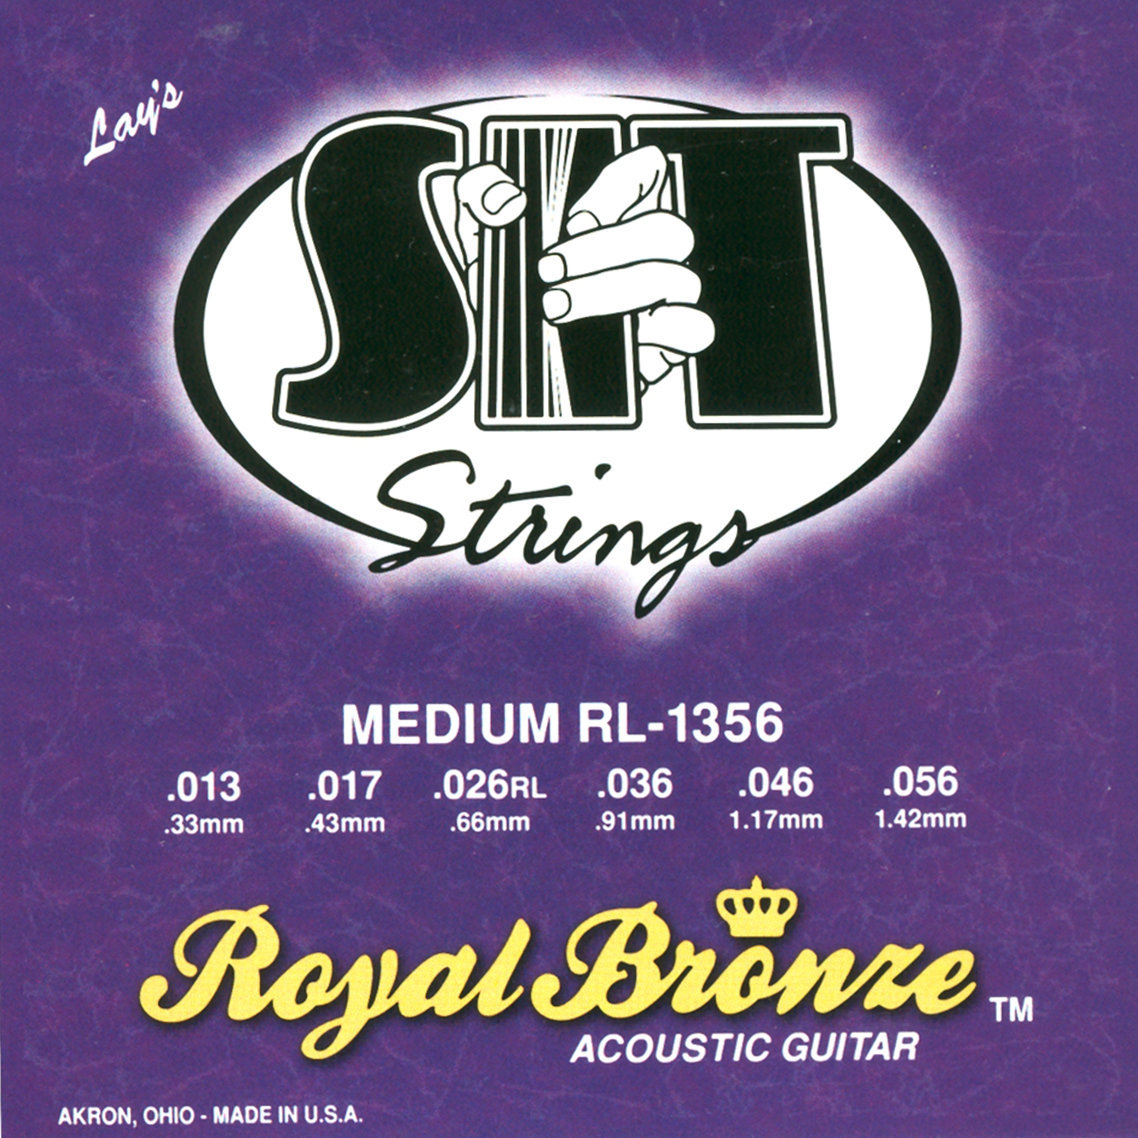 Χορδές για Ακουστική Κιθάρα SIT Strings RL1356 Royal Bronze Acoustic Medium